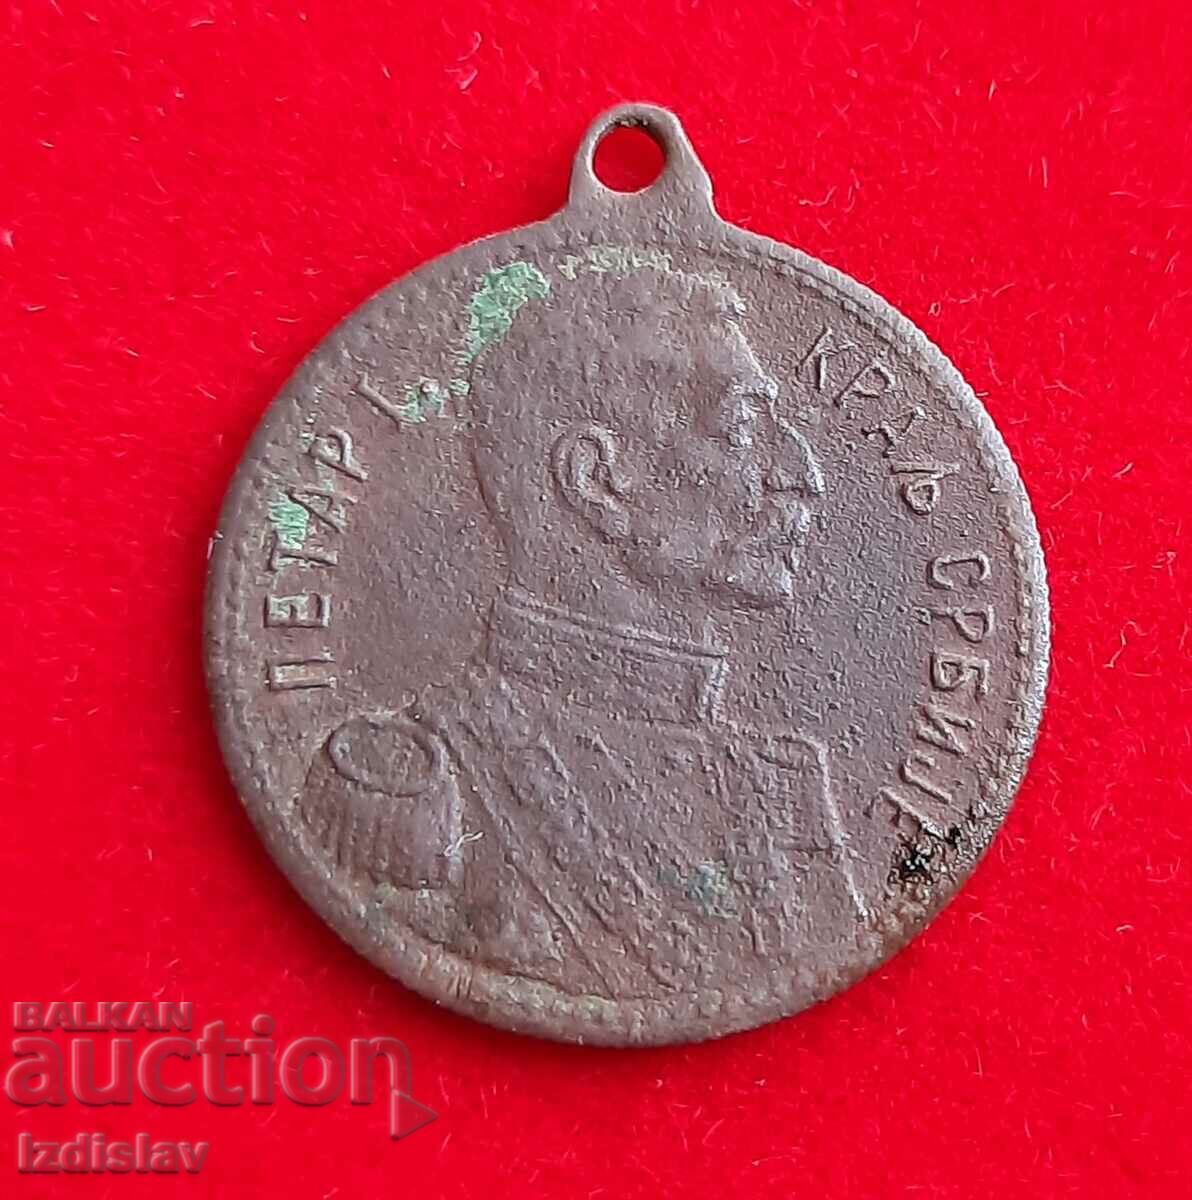 Σερβικό βασιλικό μετάλλιο μινιατούρα Πέτρος Α', βασιλιάς της Σερβίας